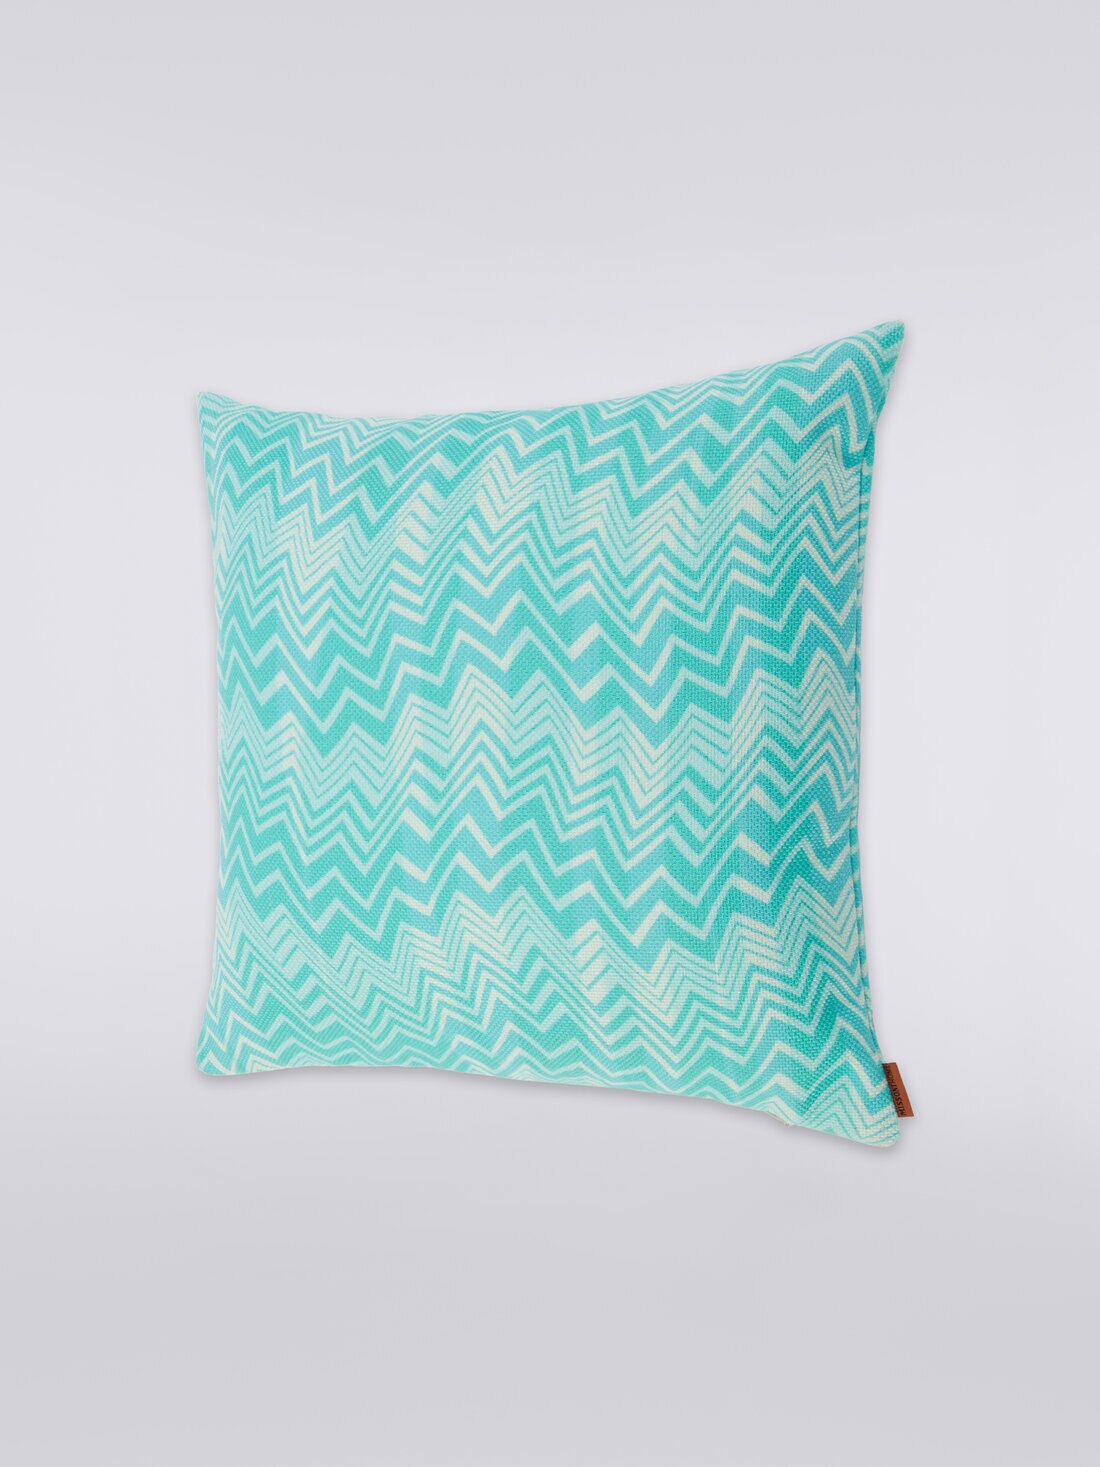 Belize cushion 40x40 cm, Multicoloured  - 8051275581222 - 1